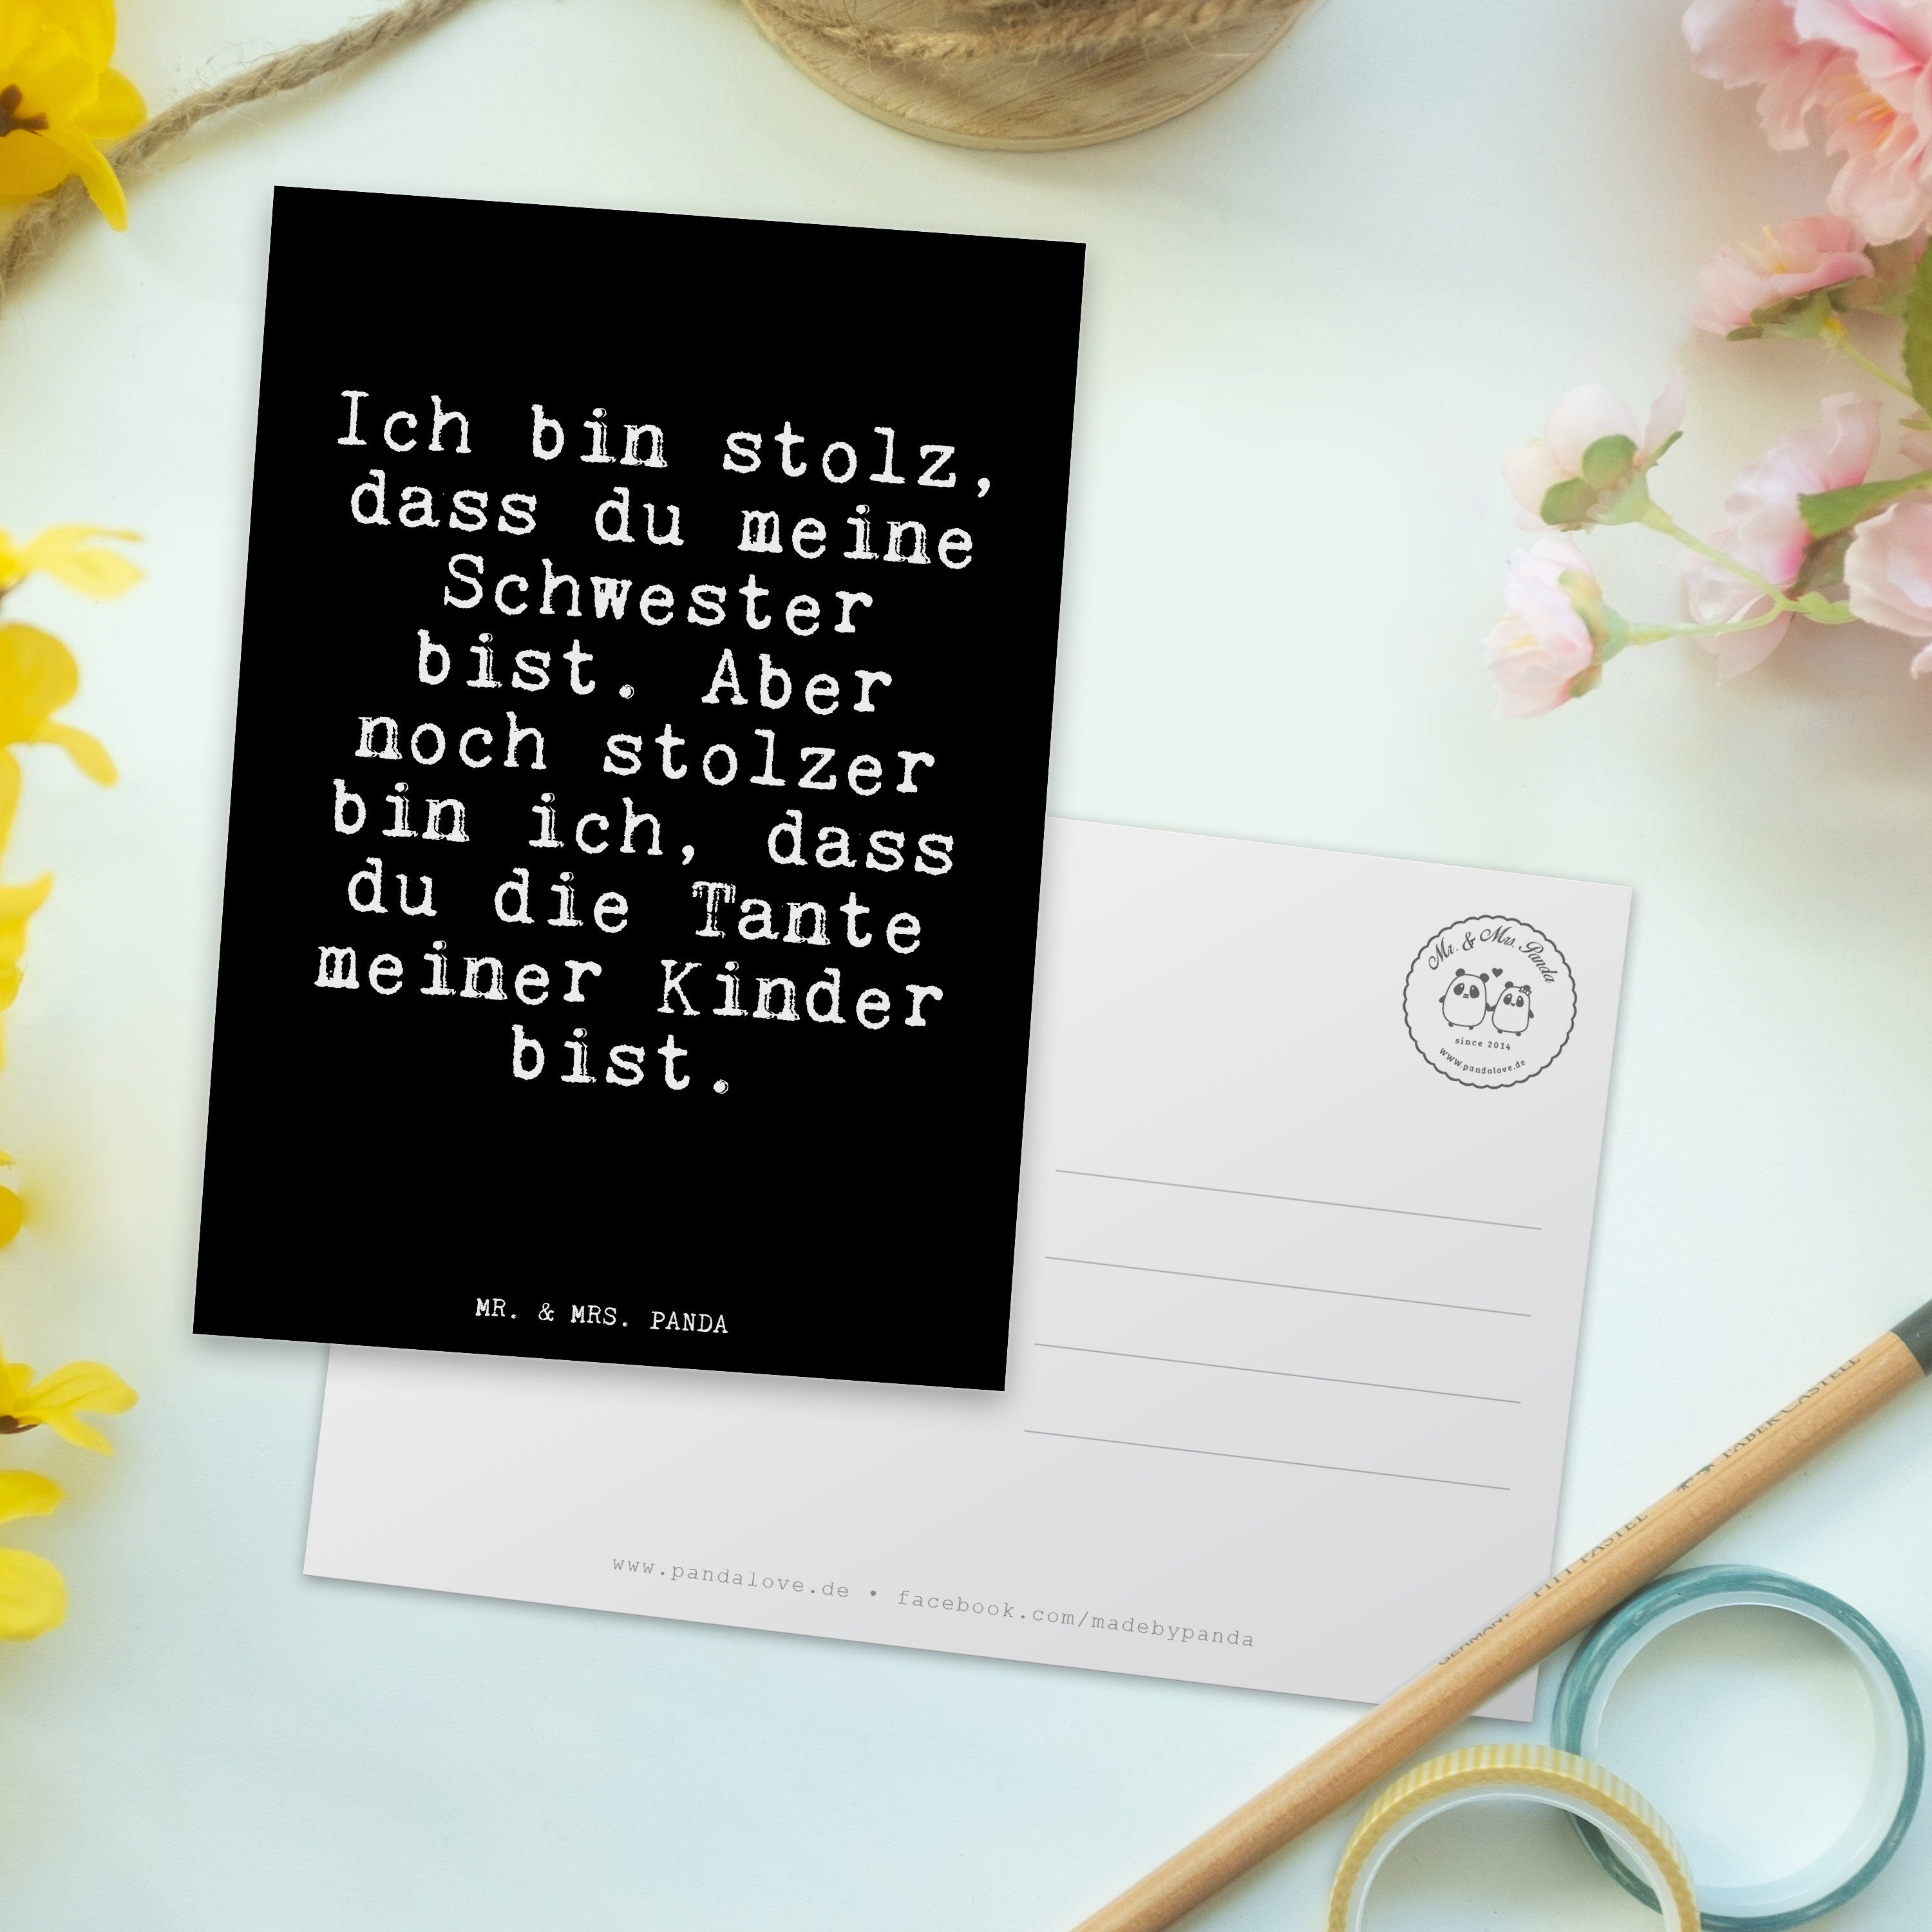 Panda Weisheiten, Tante, Mr. Sprüc Ich stolz, Schwarz Geschenk, - dass... - Mrs. bin & Postkarte